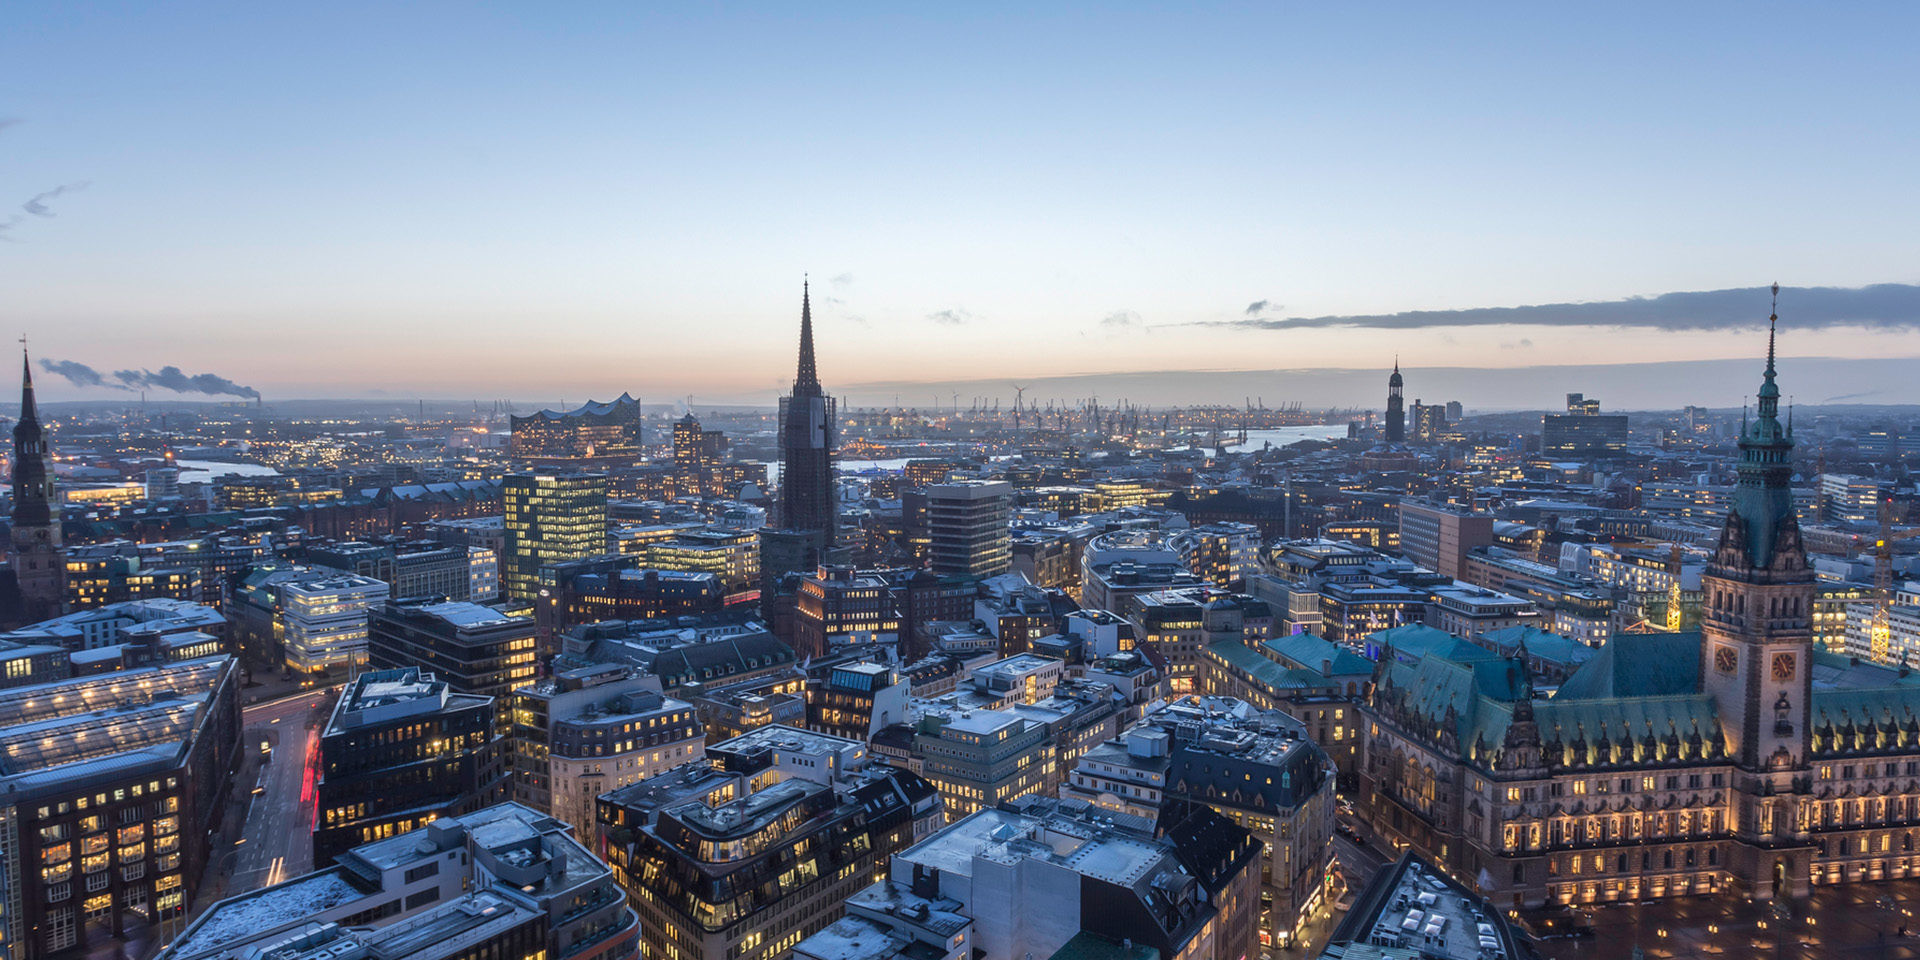 Las ciudades-estado nunca se fueron: Hamburgo, Hong Kong, Singapur y el futuro